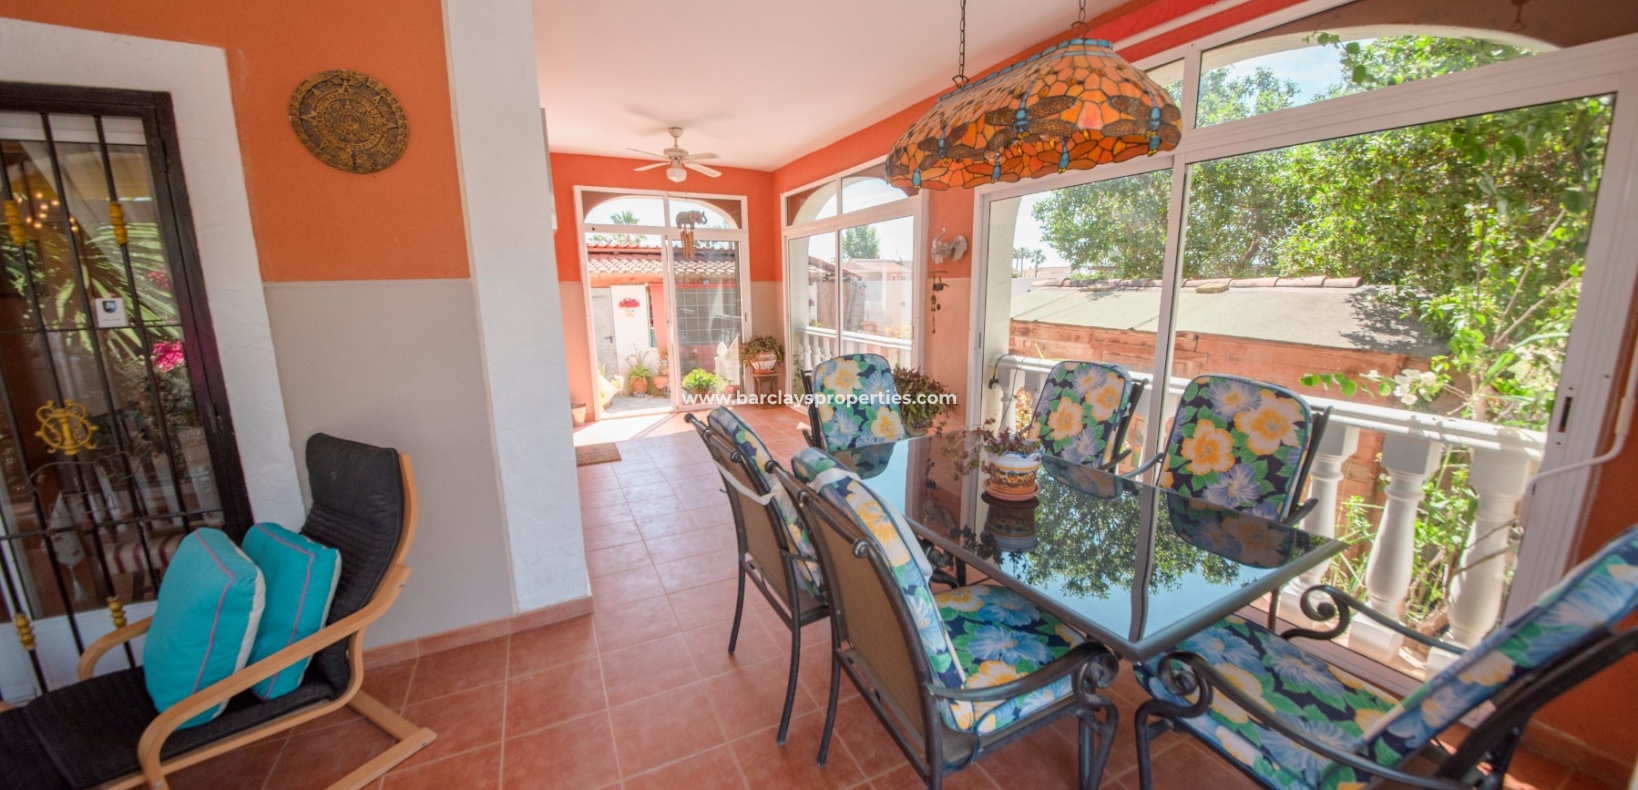 inglasad veranda - Lantligt hus till salu i Catral, Spanien